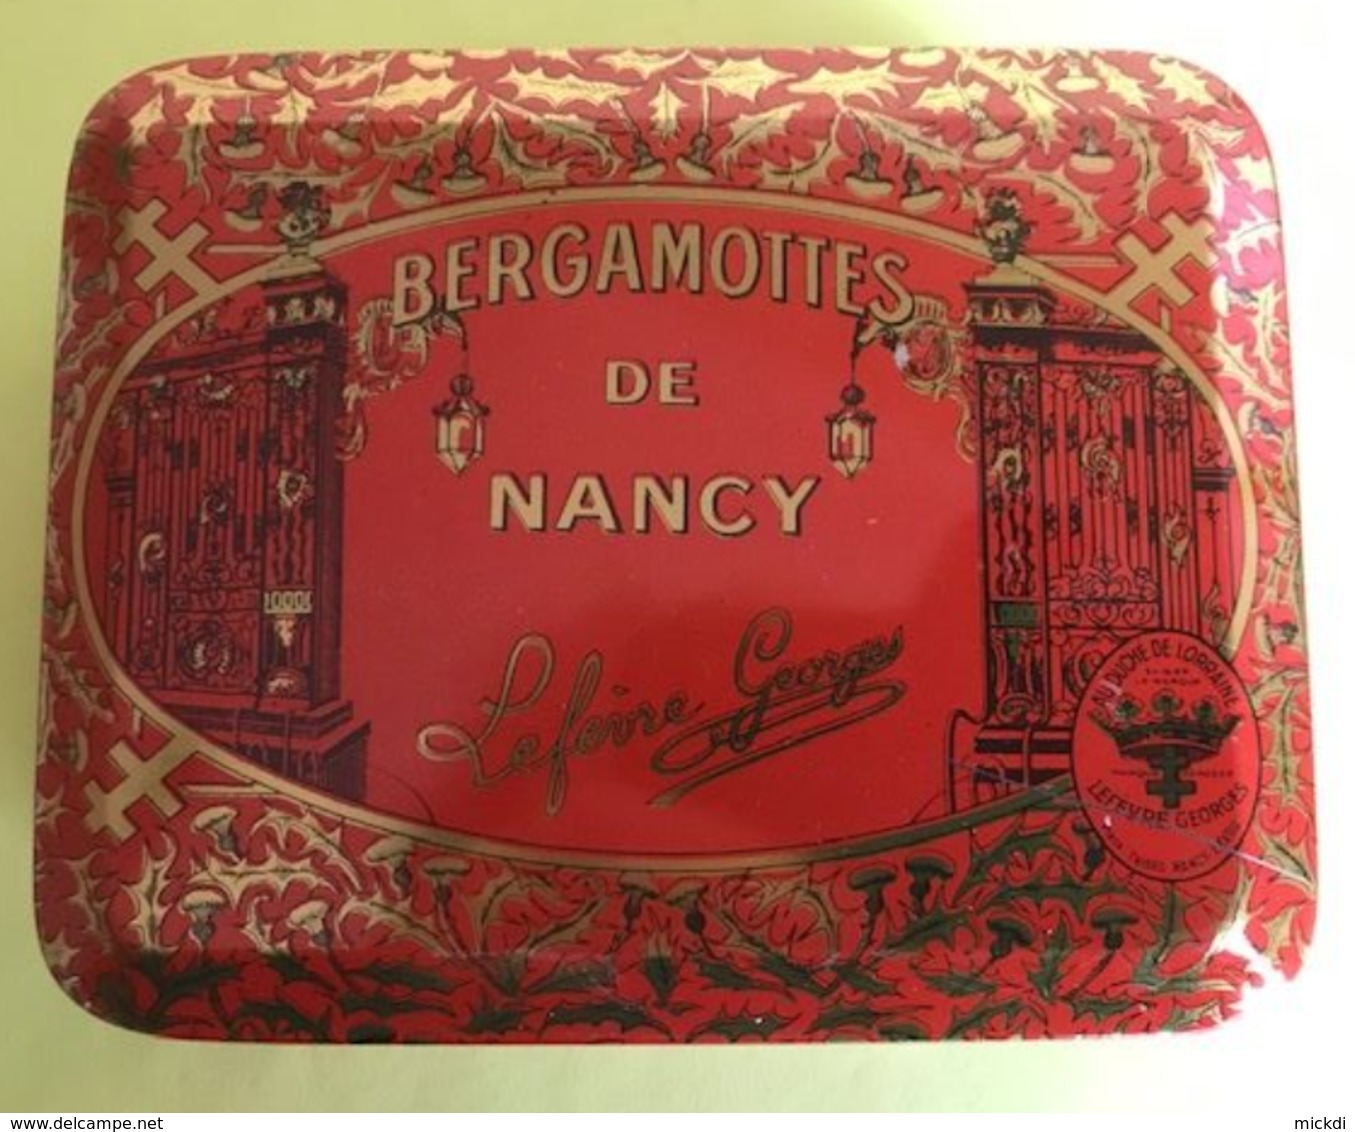 BOITE METAL BERGAMOTTES BERGAMOTES DE NANCY - LEFEVRE GEORGES AU DUCHE DE LORRAINE - Boîtes